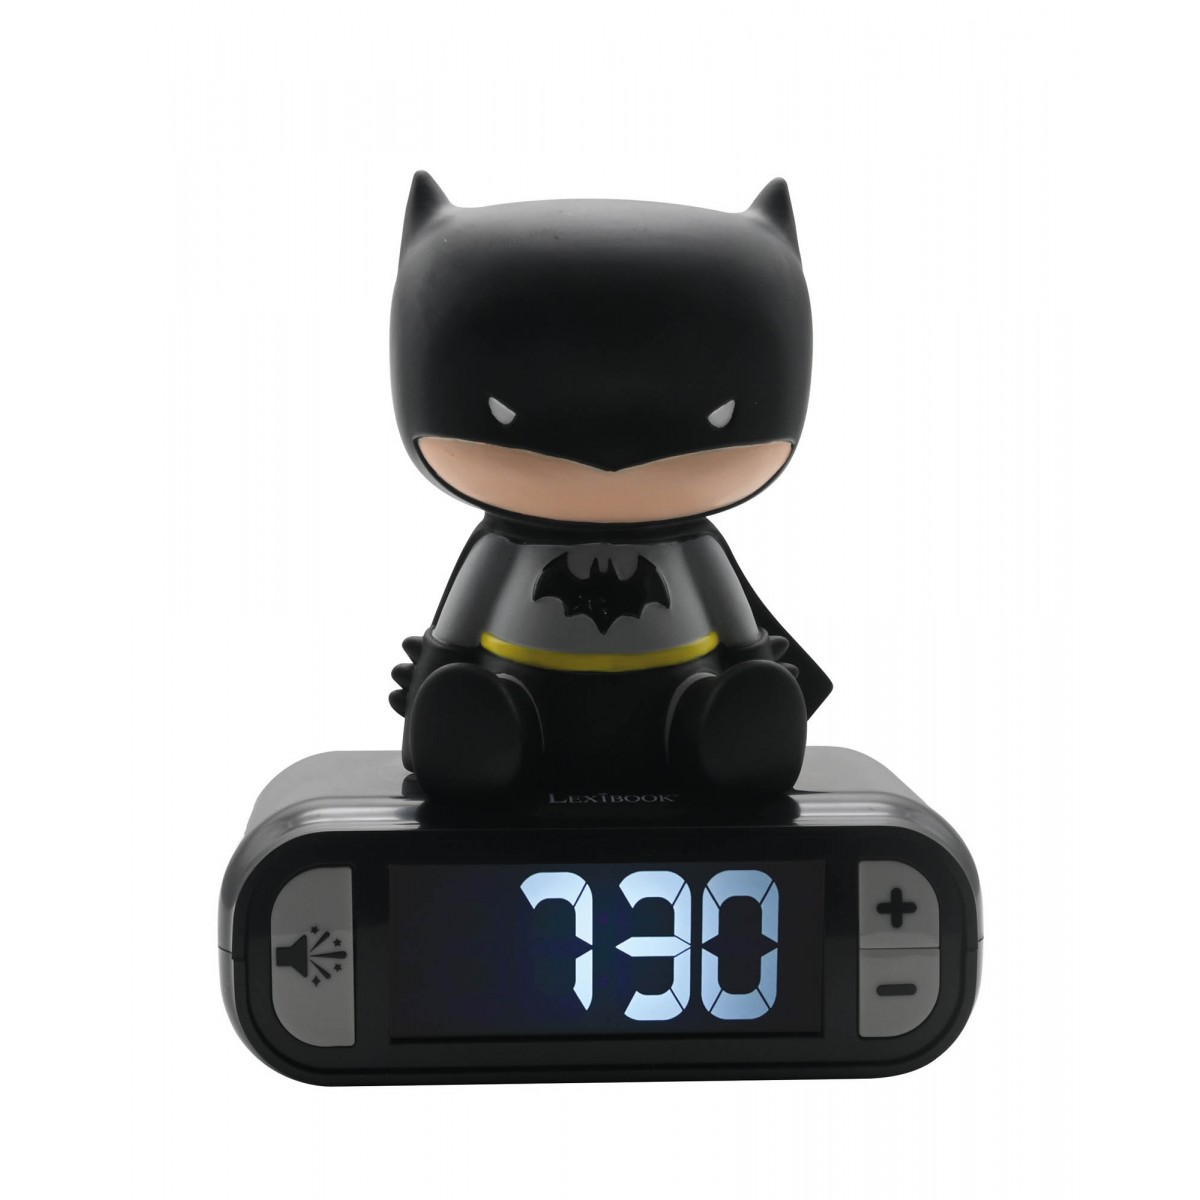 Despertador Batman con pantalla LCD digital y luz de noche integrada